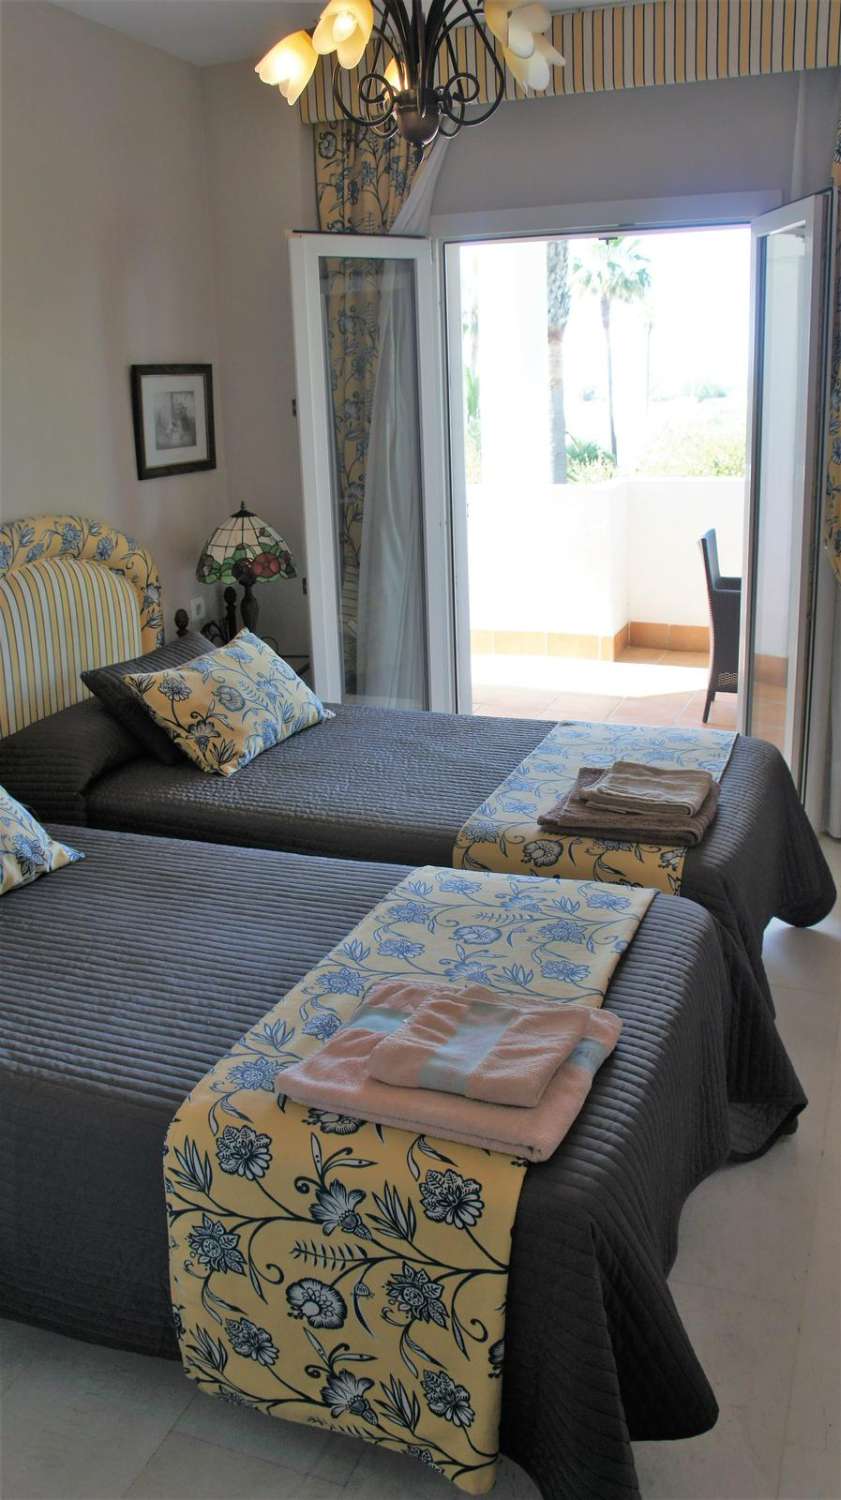 Alquiler Vacacional. Apartamento con vistas al mar. Puerto Banús, Marbella.